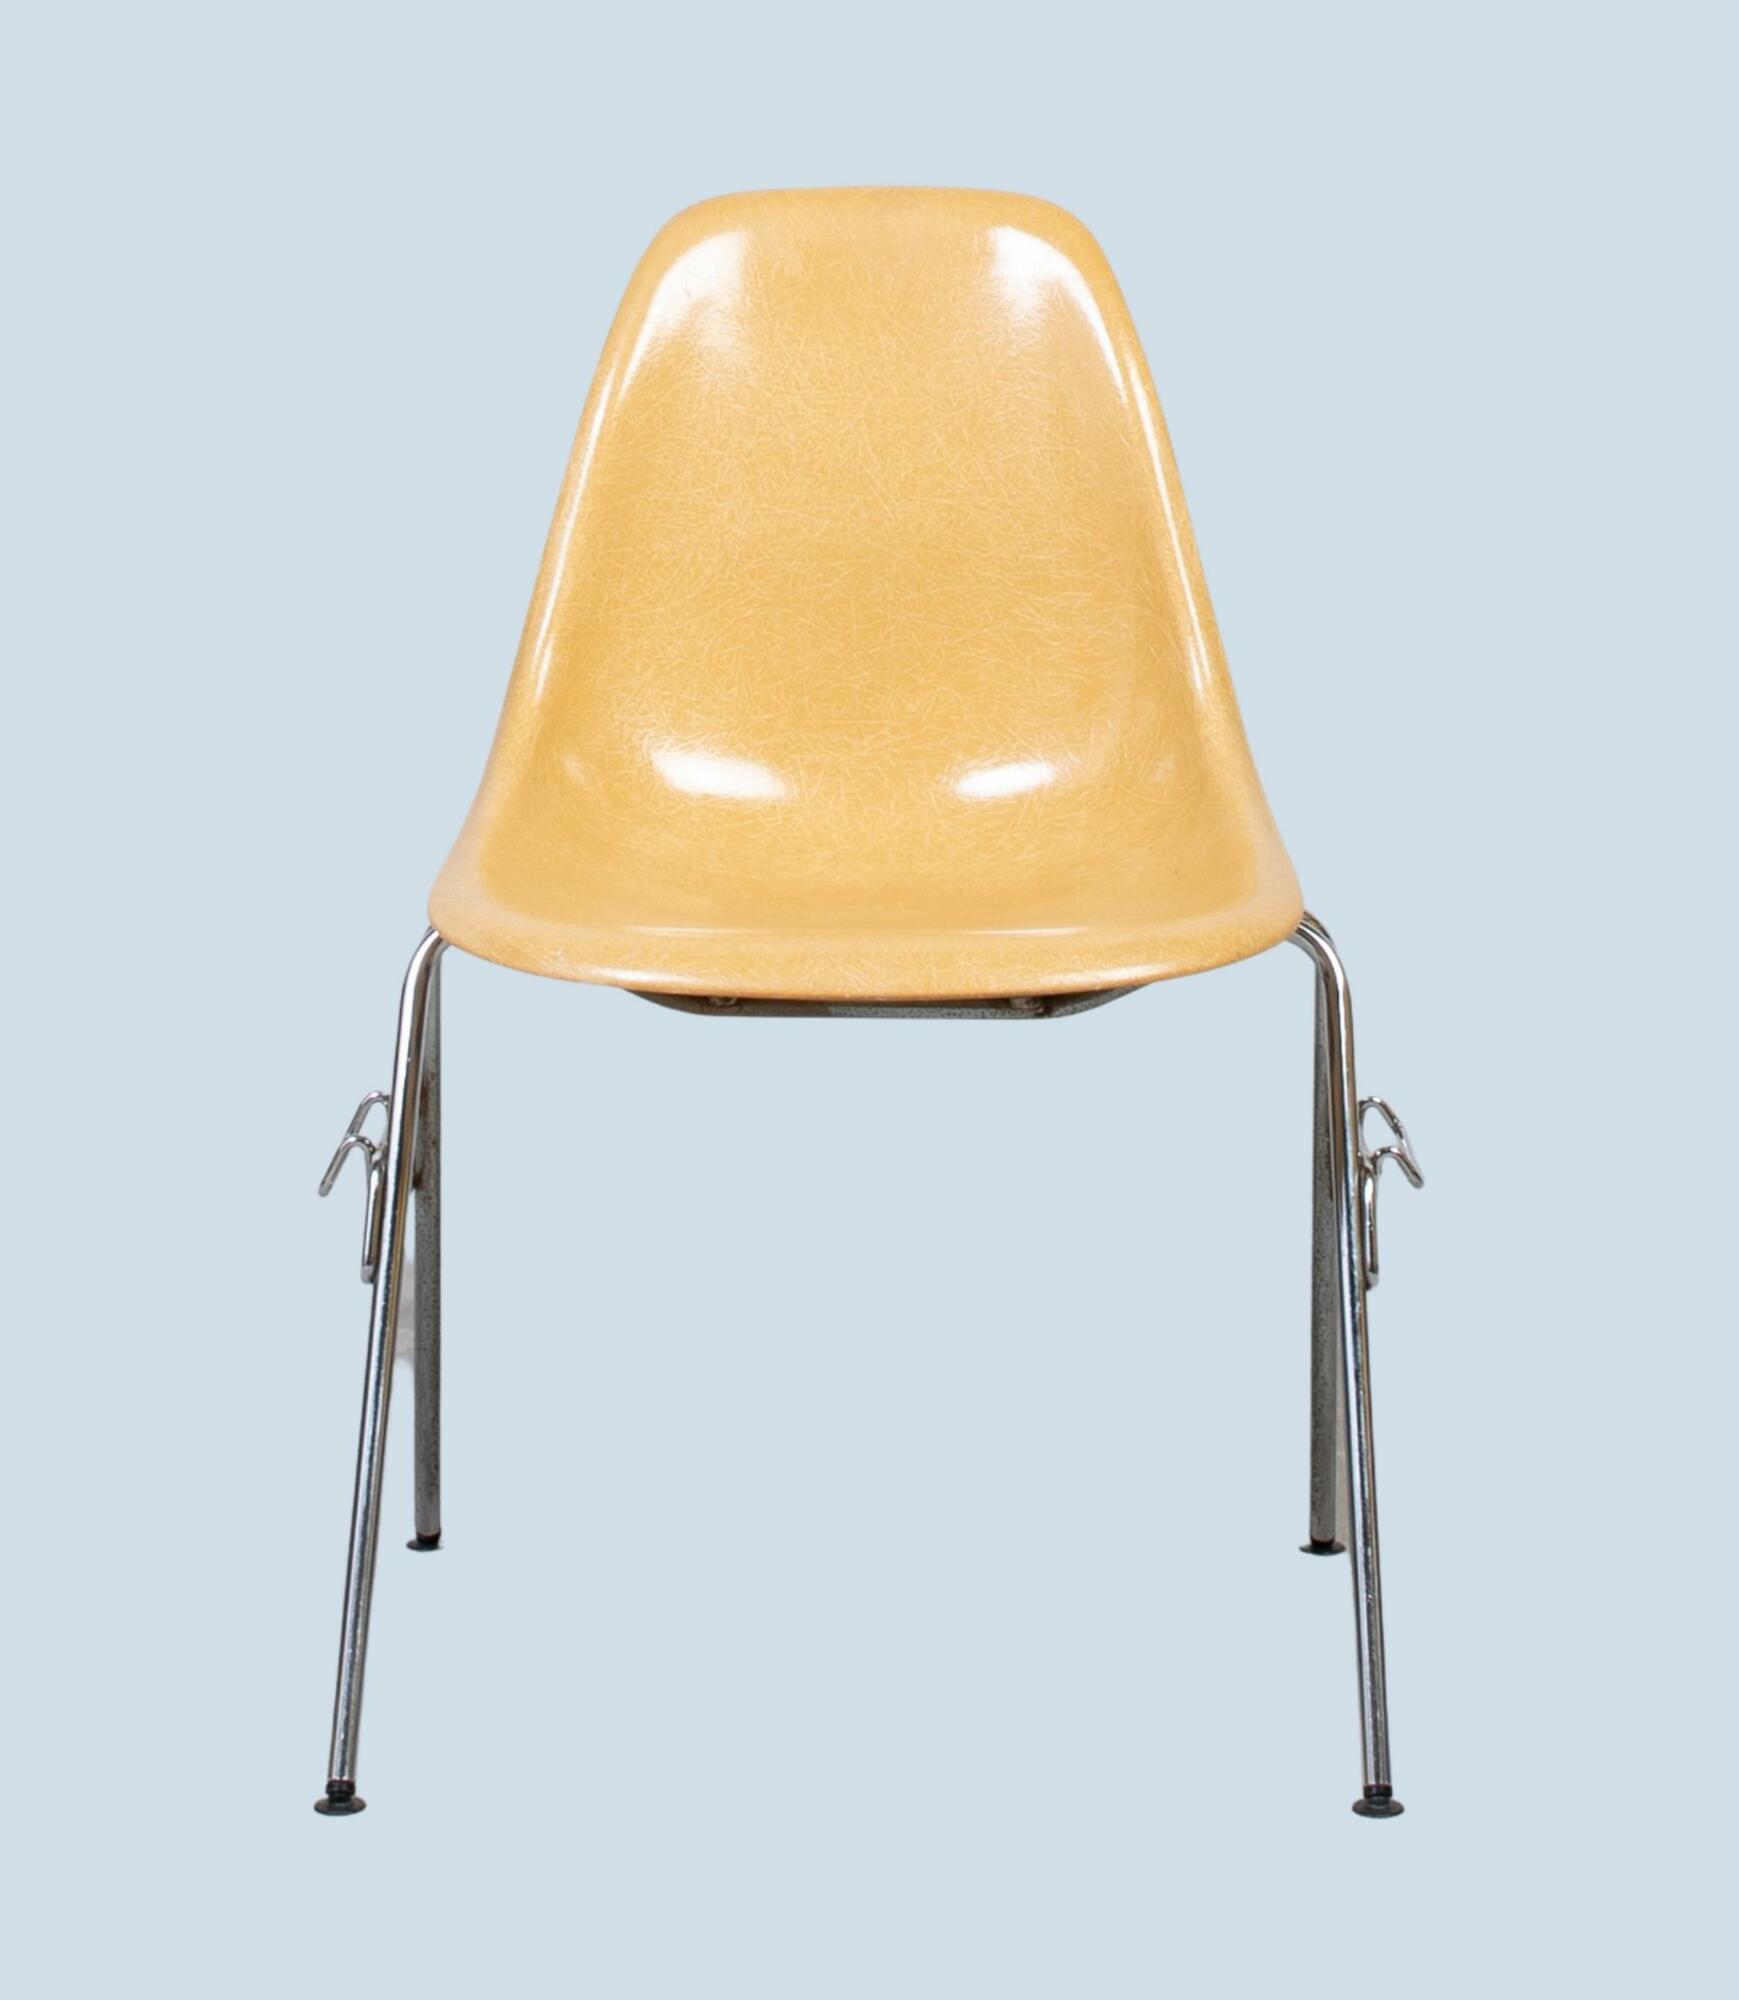 Eames Fiberglass Side Chair by Herman Miller Ochre Light 1